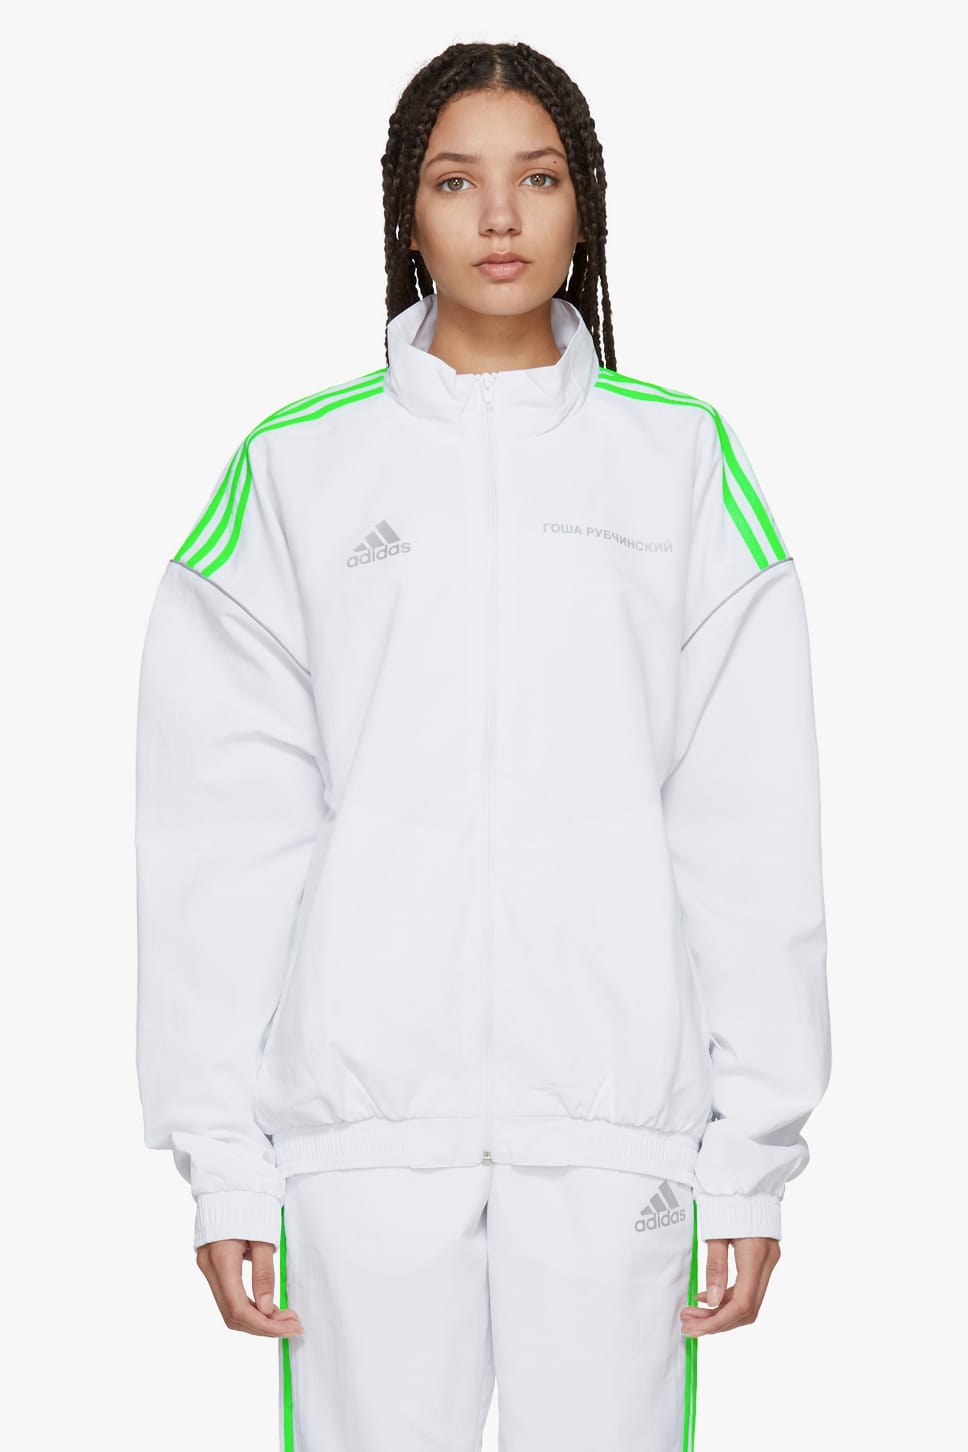 gosha rubchinskiy adidas track jacket